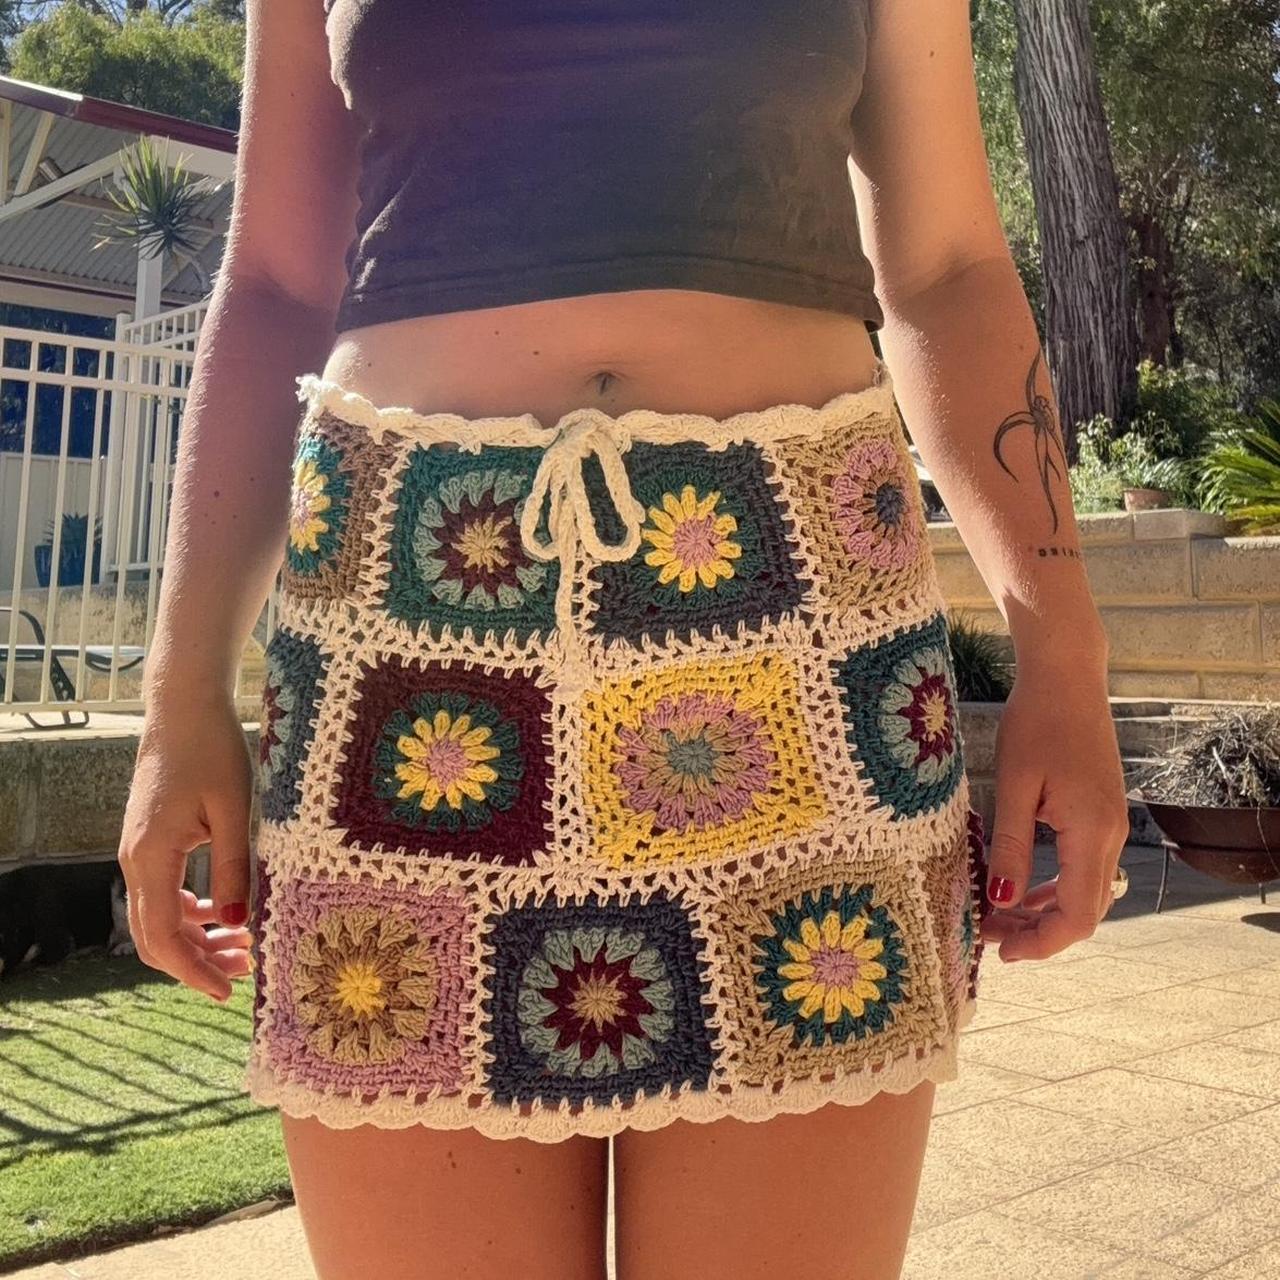 Her pony crochet skirt Worn once to festival - Depop